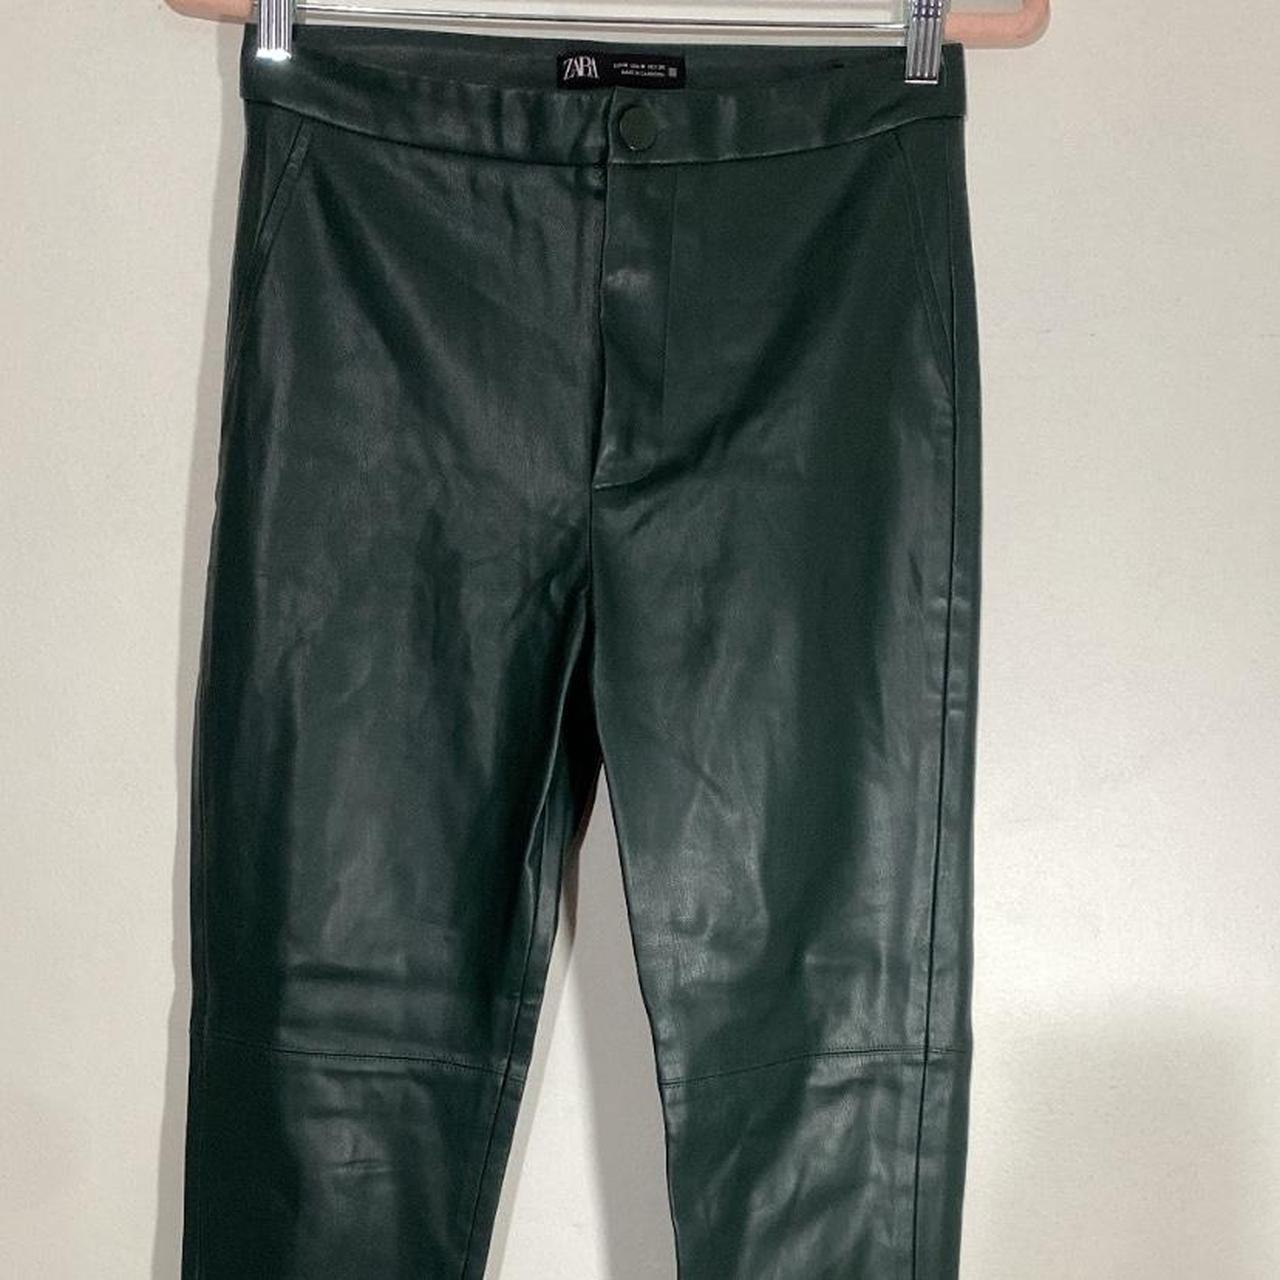 Zara Women's Green Trousers | Depop